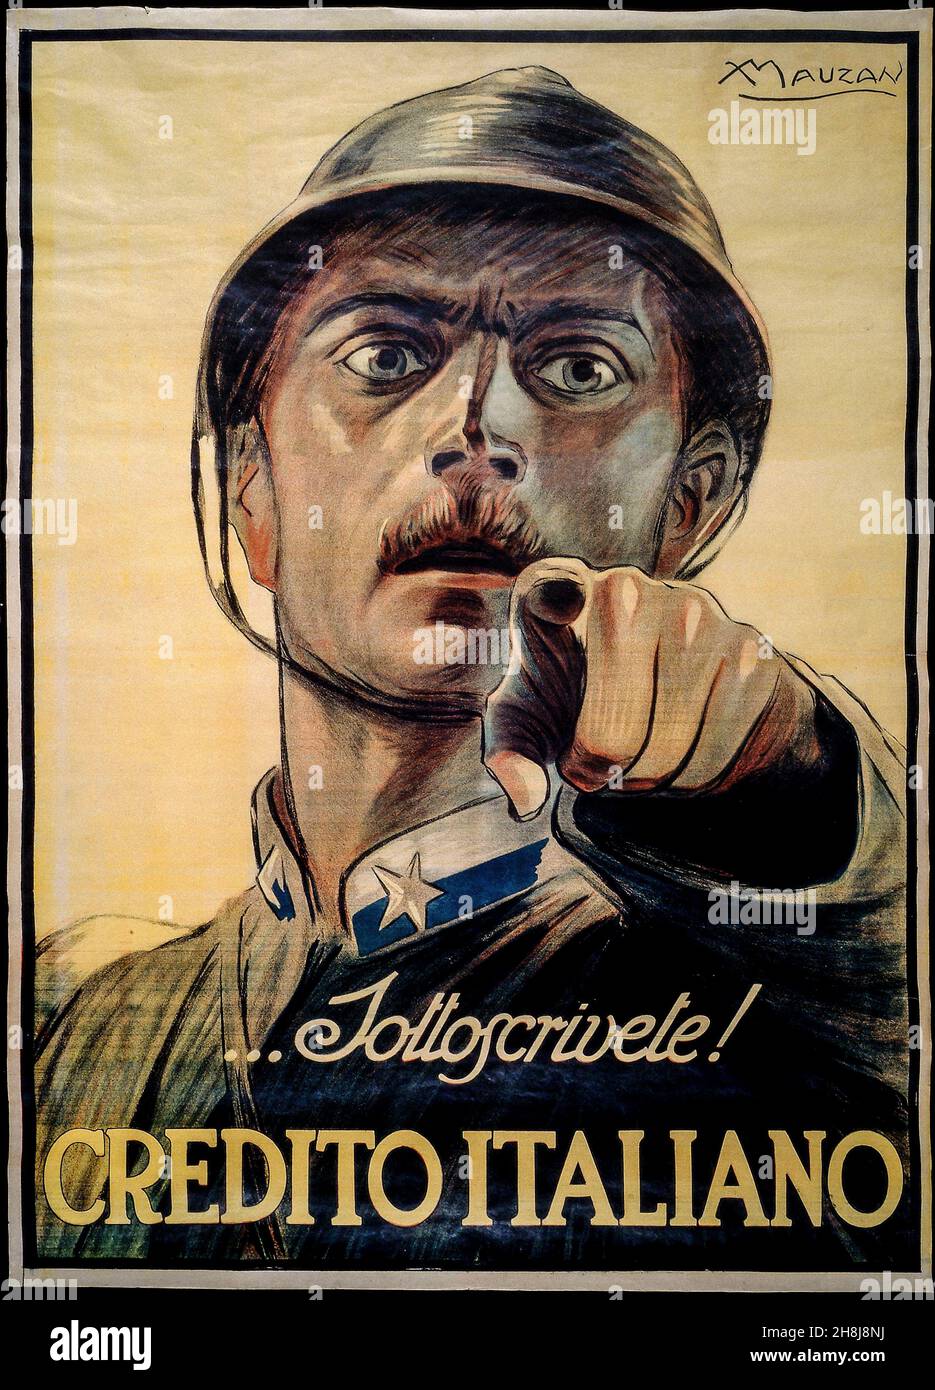 Achille Luciano Mauzan - affiche pour garantir le crédit italien pendant la première Guerre mondiale - 1917 Banque D'Images